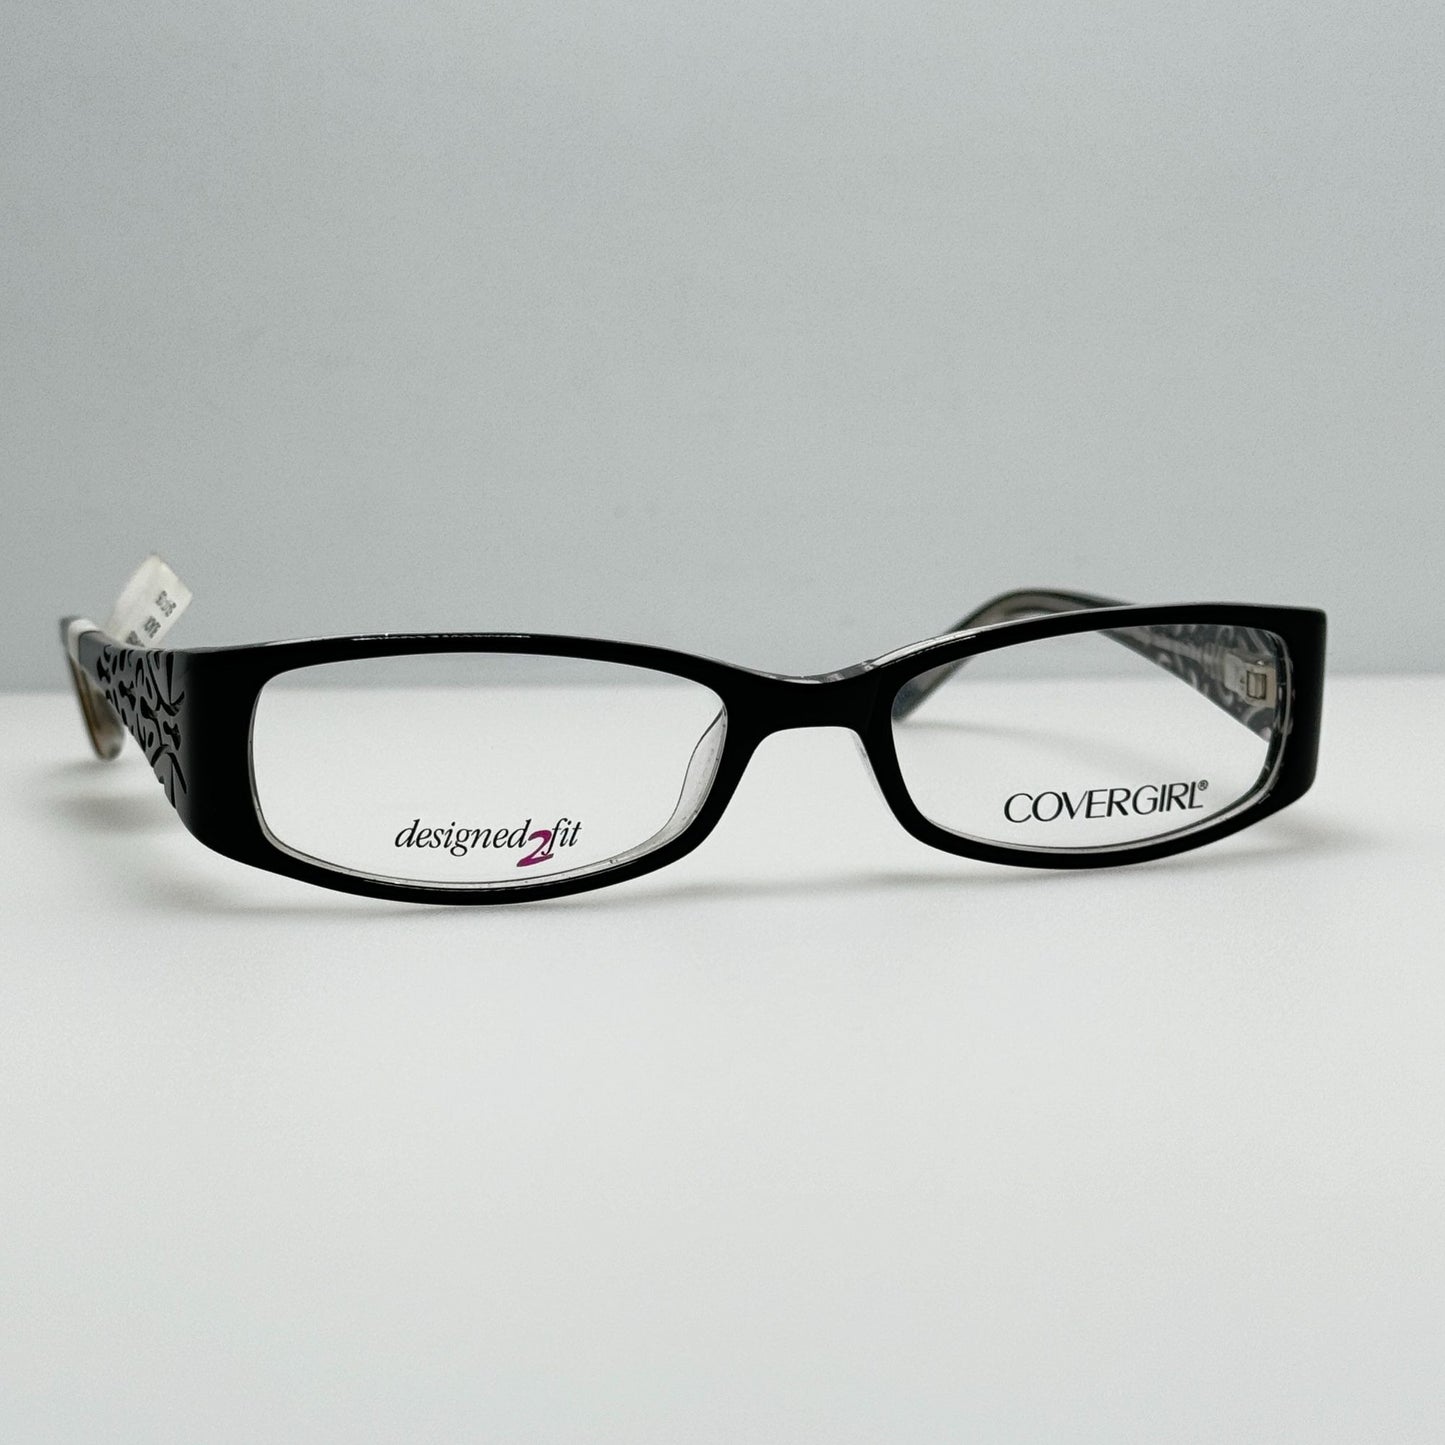 Covergirl Eyeglasses Eye Glasses Frames CG8024 col 003 53-17-135